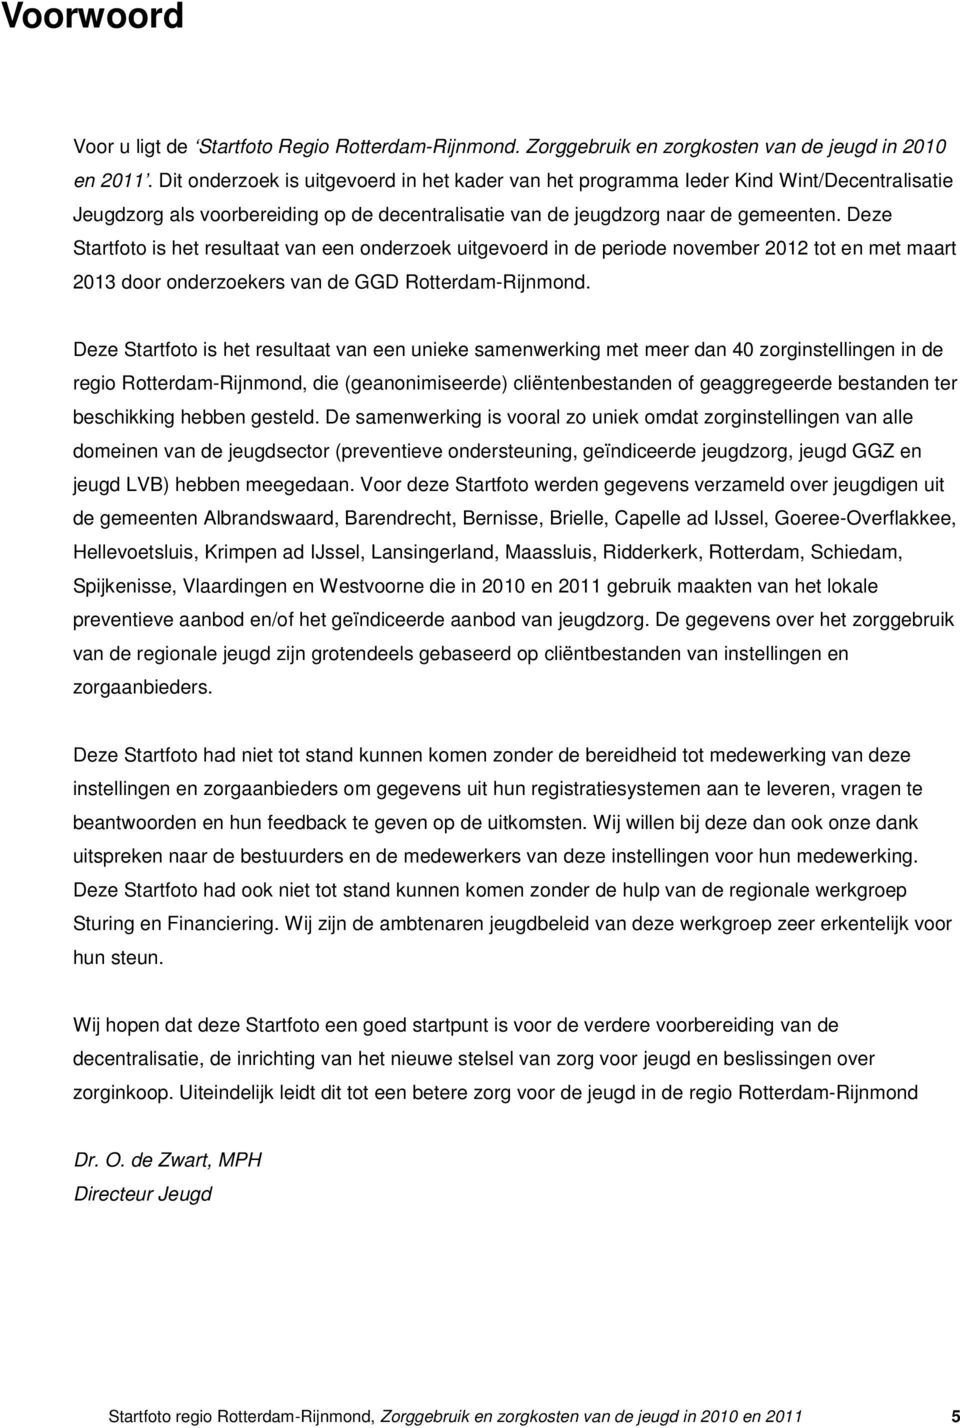 Deze Startfoto is het resultaat van een onderzoek uitgevoerd in de periode november 2012 tot en met maart 2013 door onderzoekers van de GGD Rotterdam-Rijnmond.